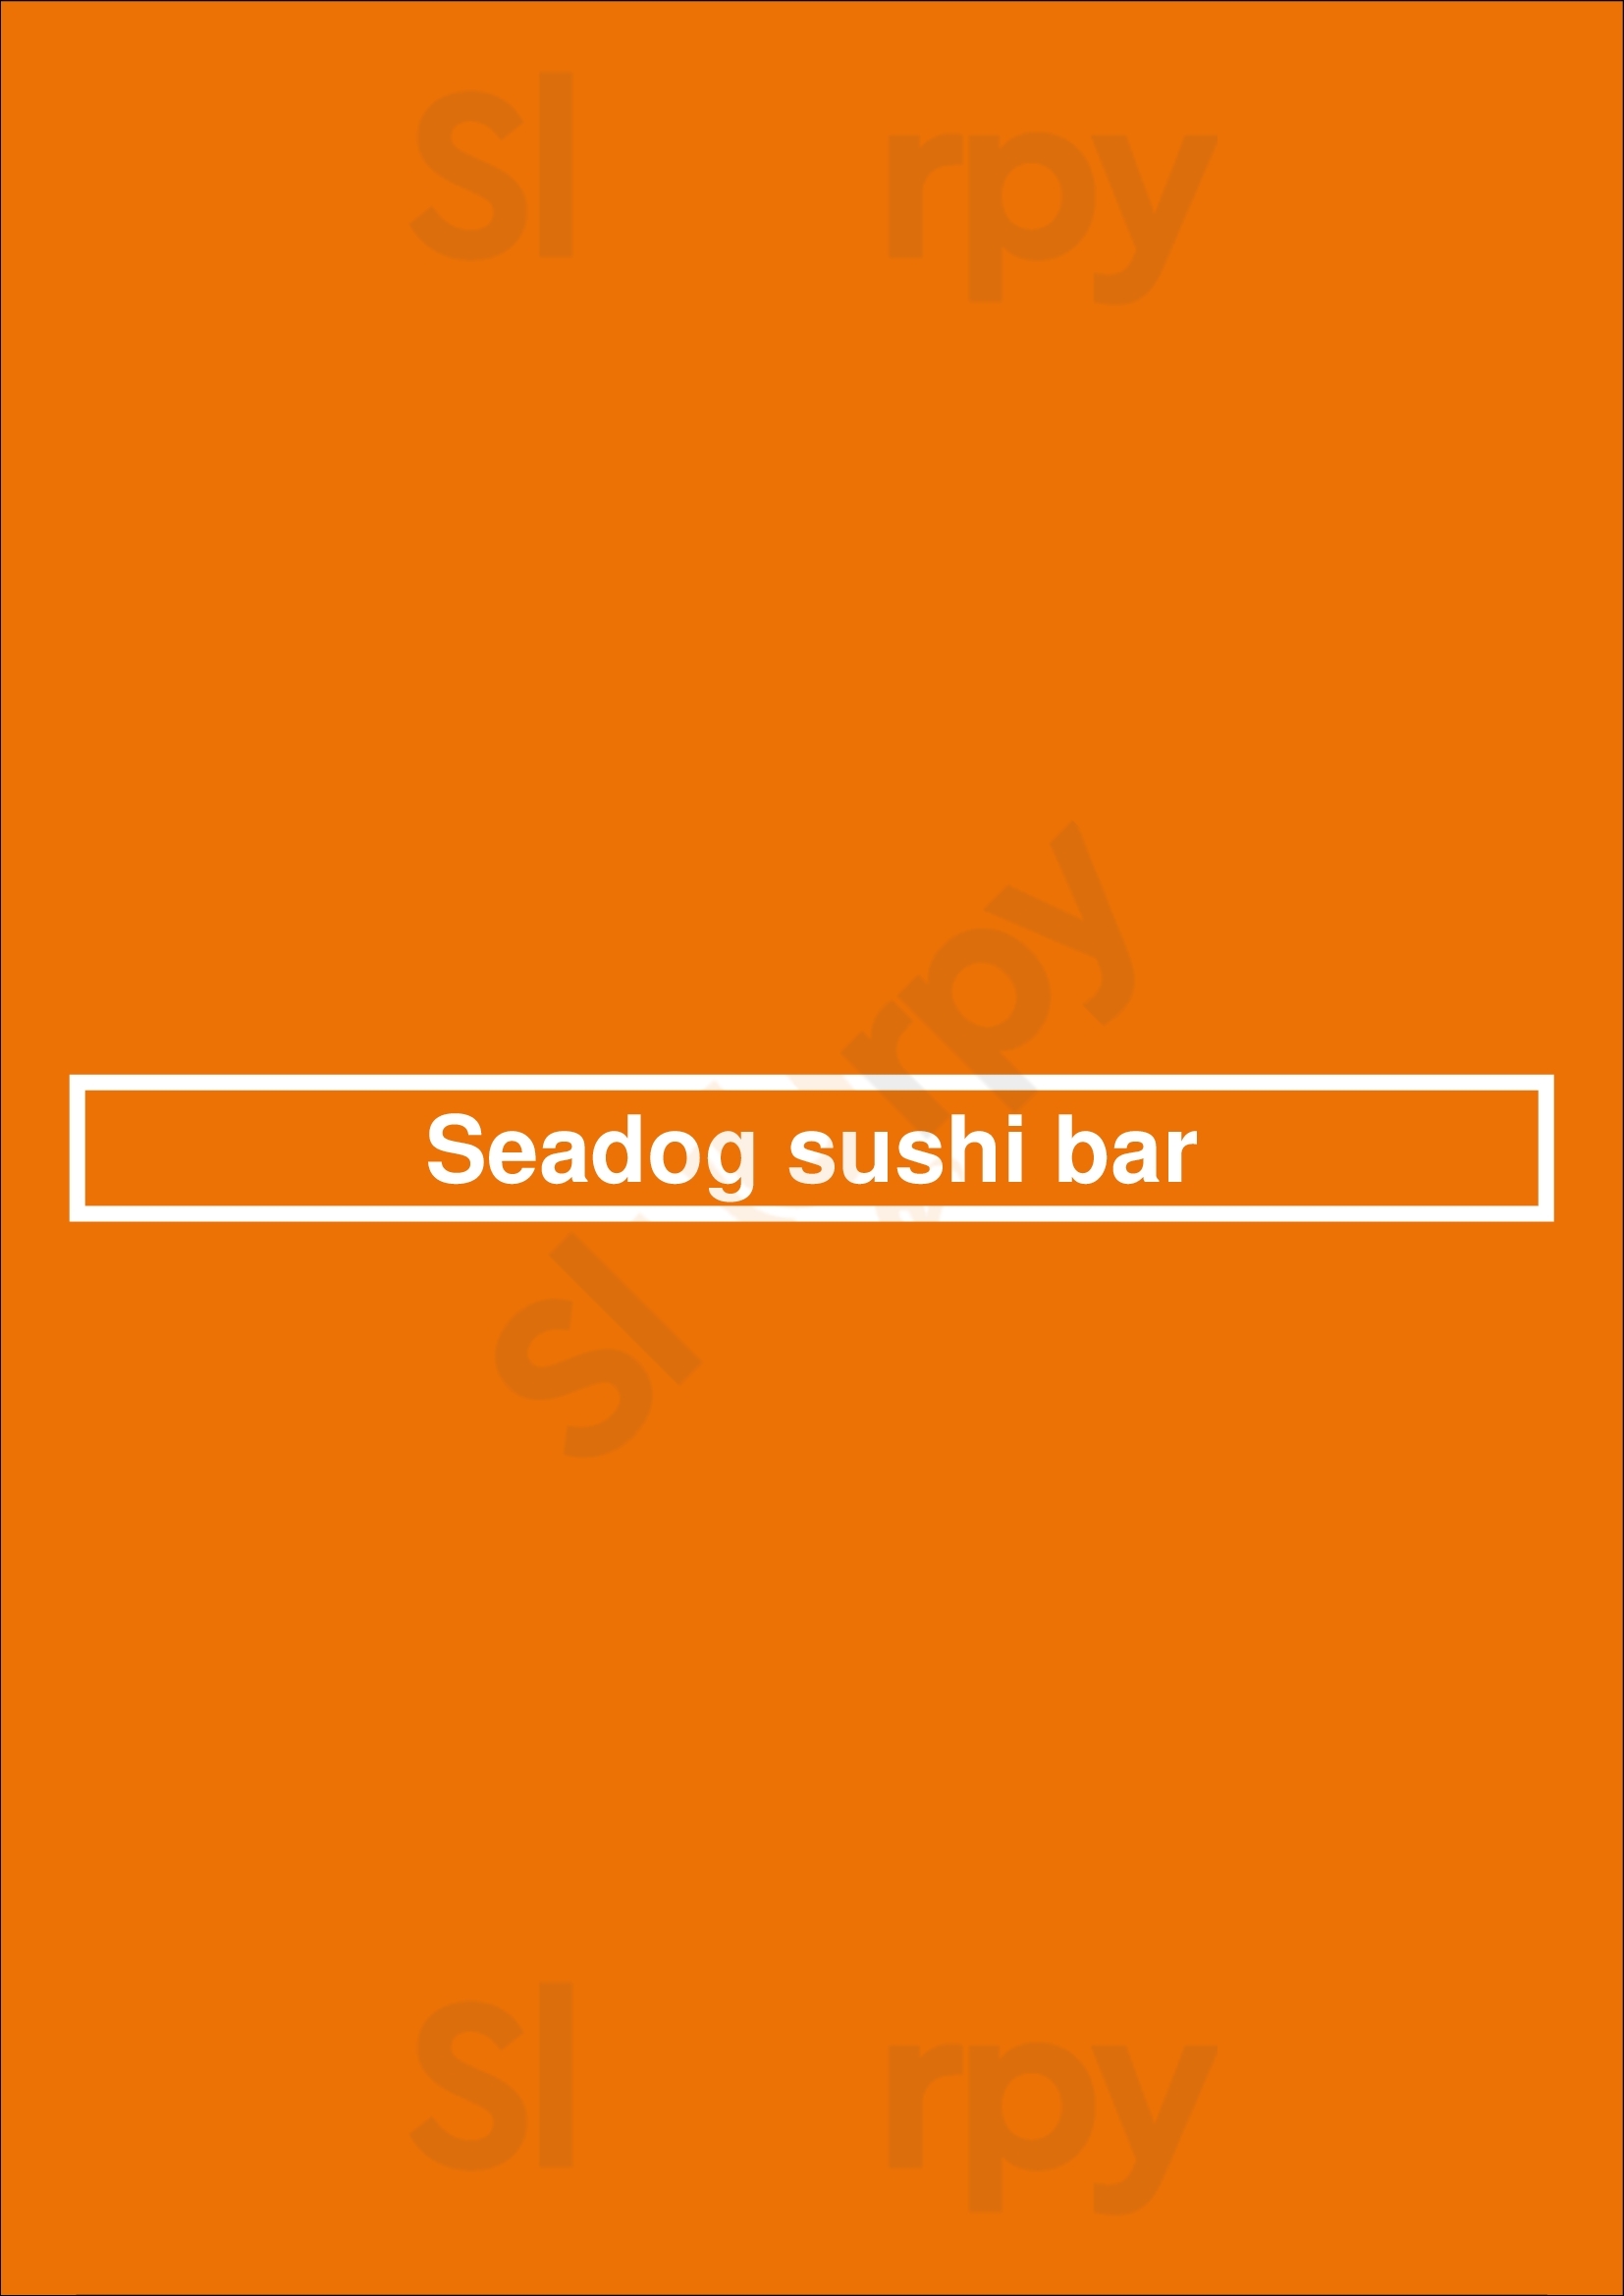 Seadog Sushi Bar Chicago Menu - 1